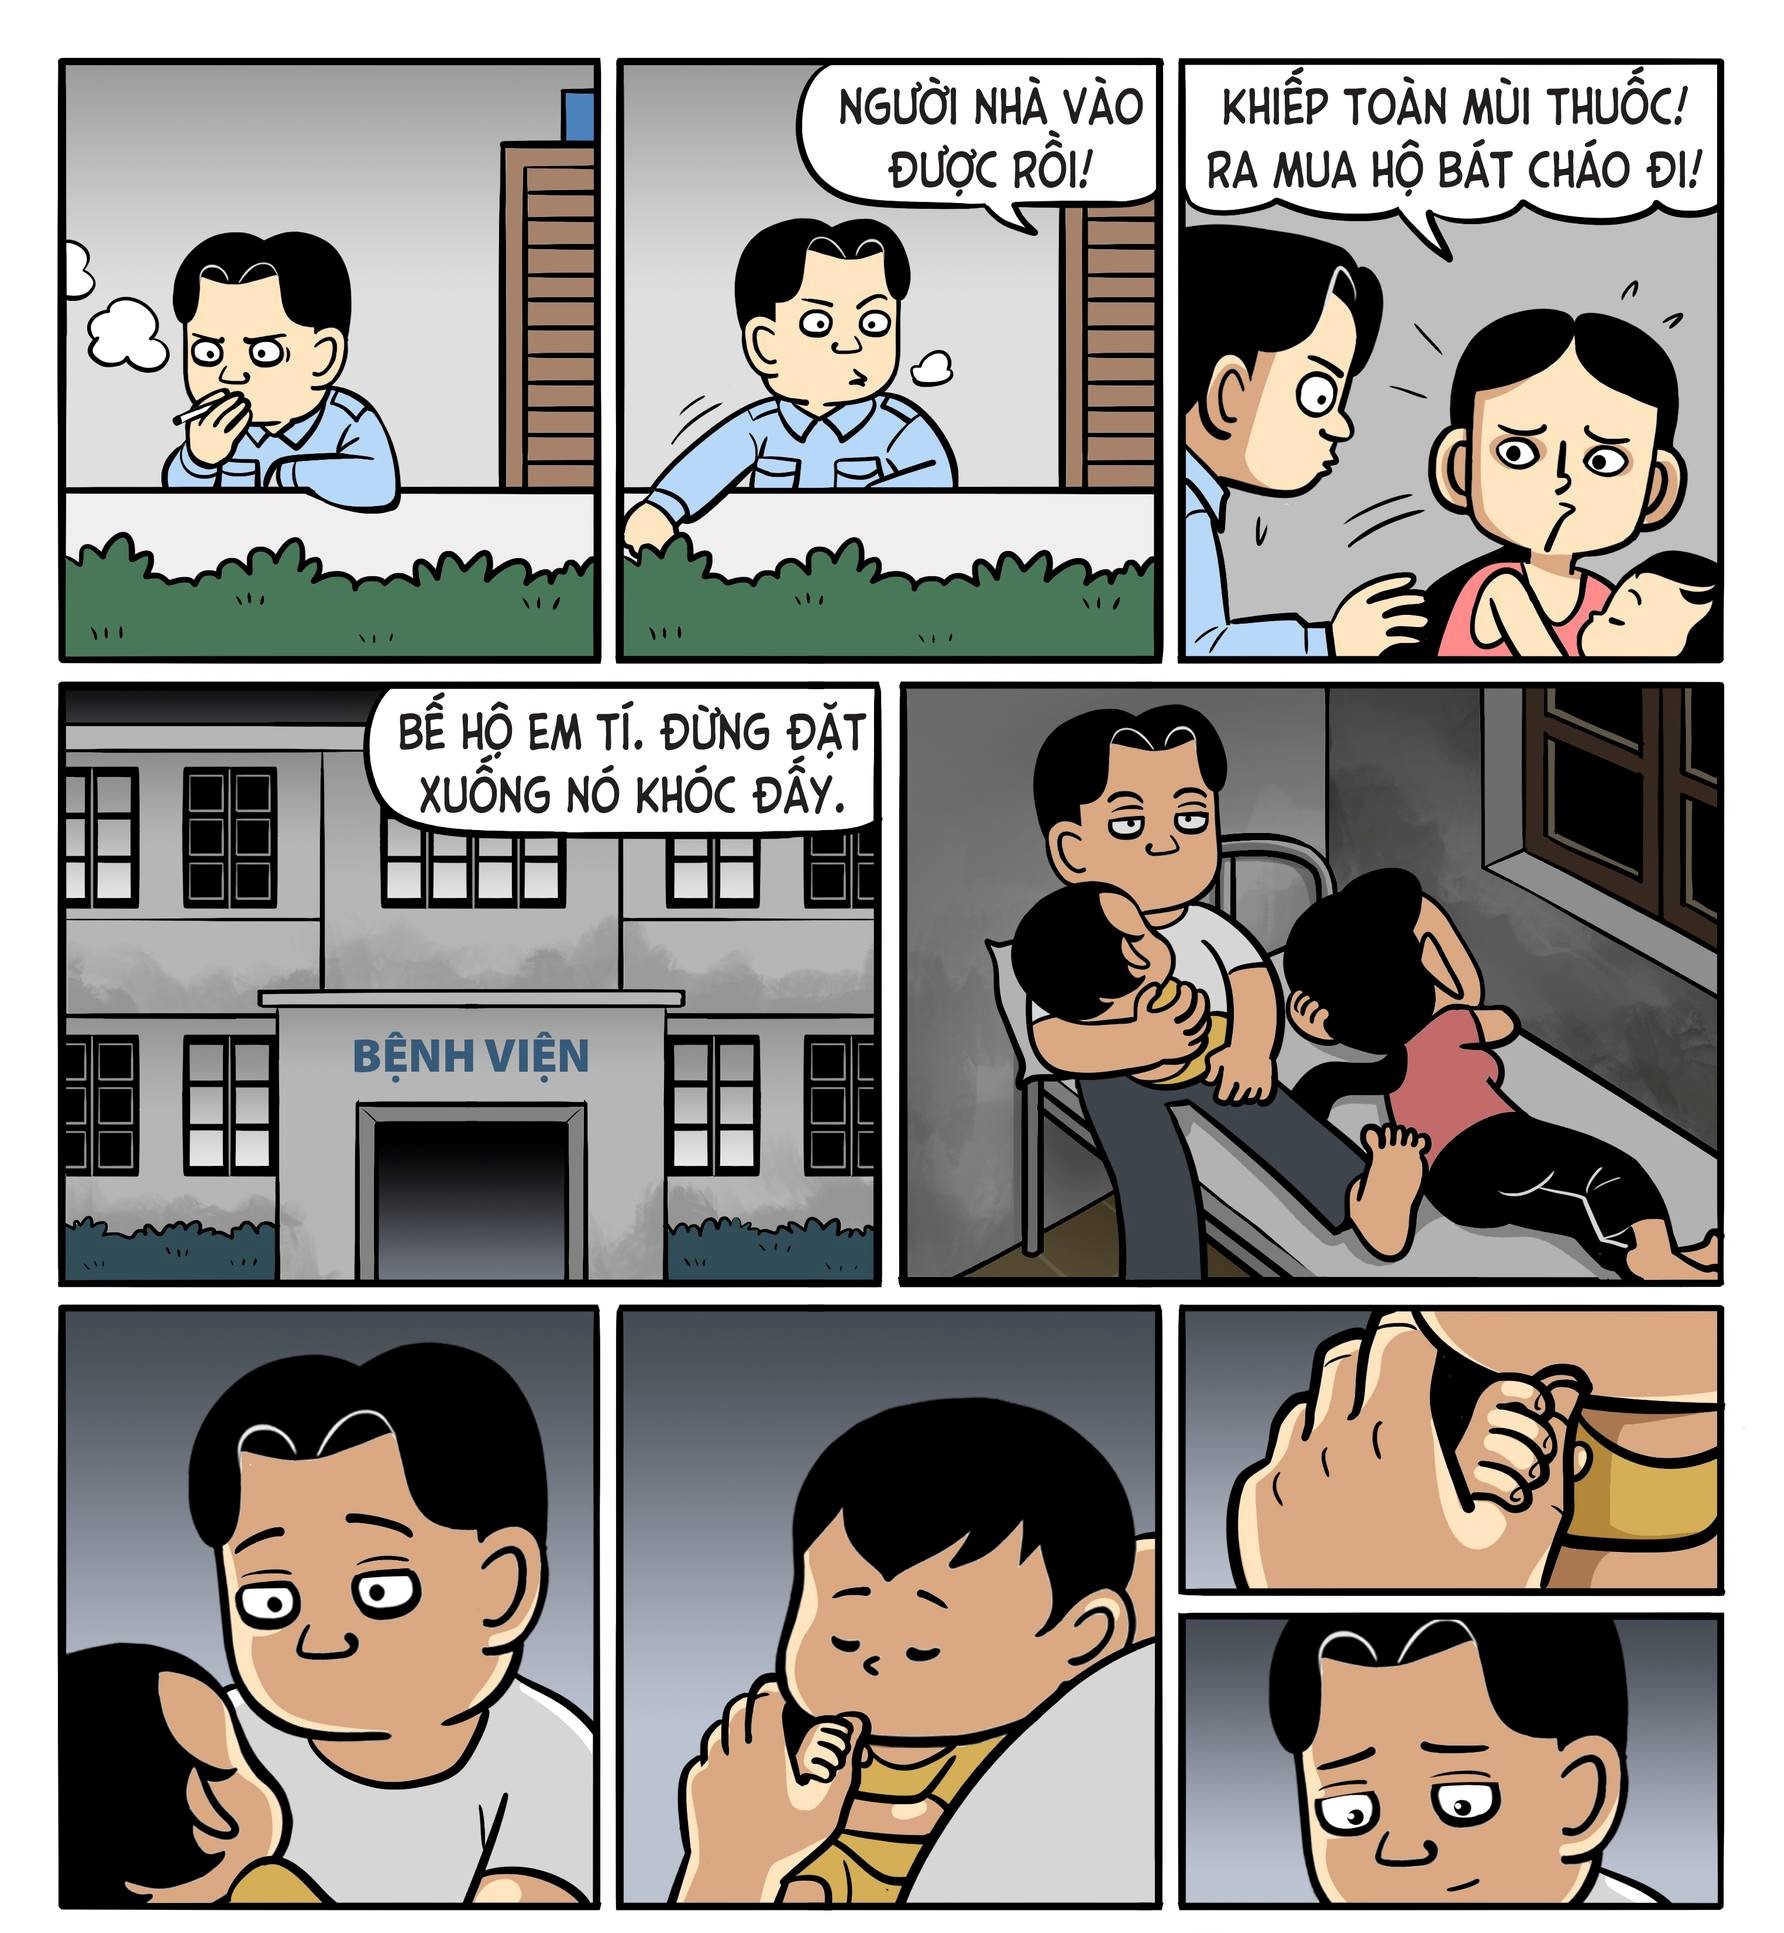 “Bố và con gái”: Bộ truyện tranh về tình cảm gia đình khiến cộng đồng mạng xúc động - Ảnh 3.